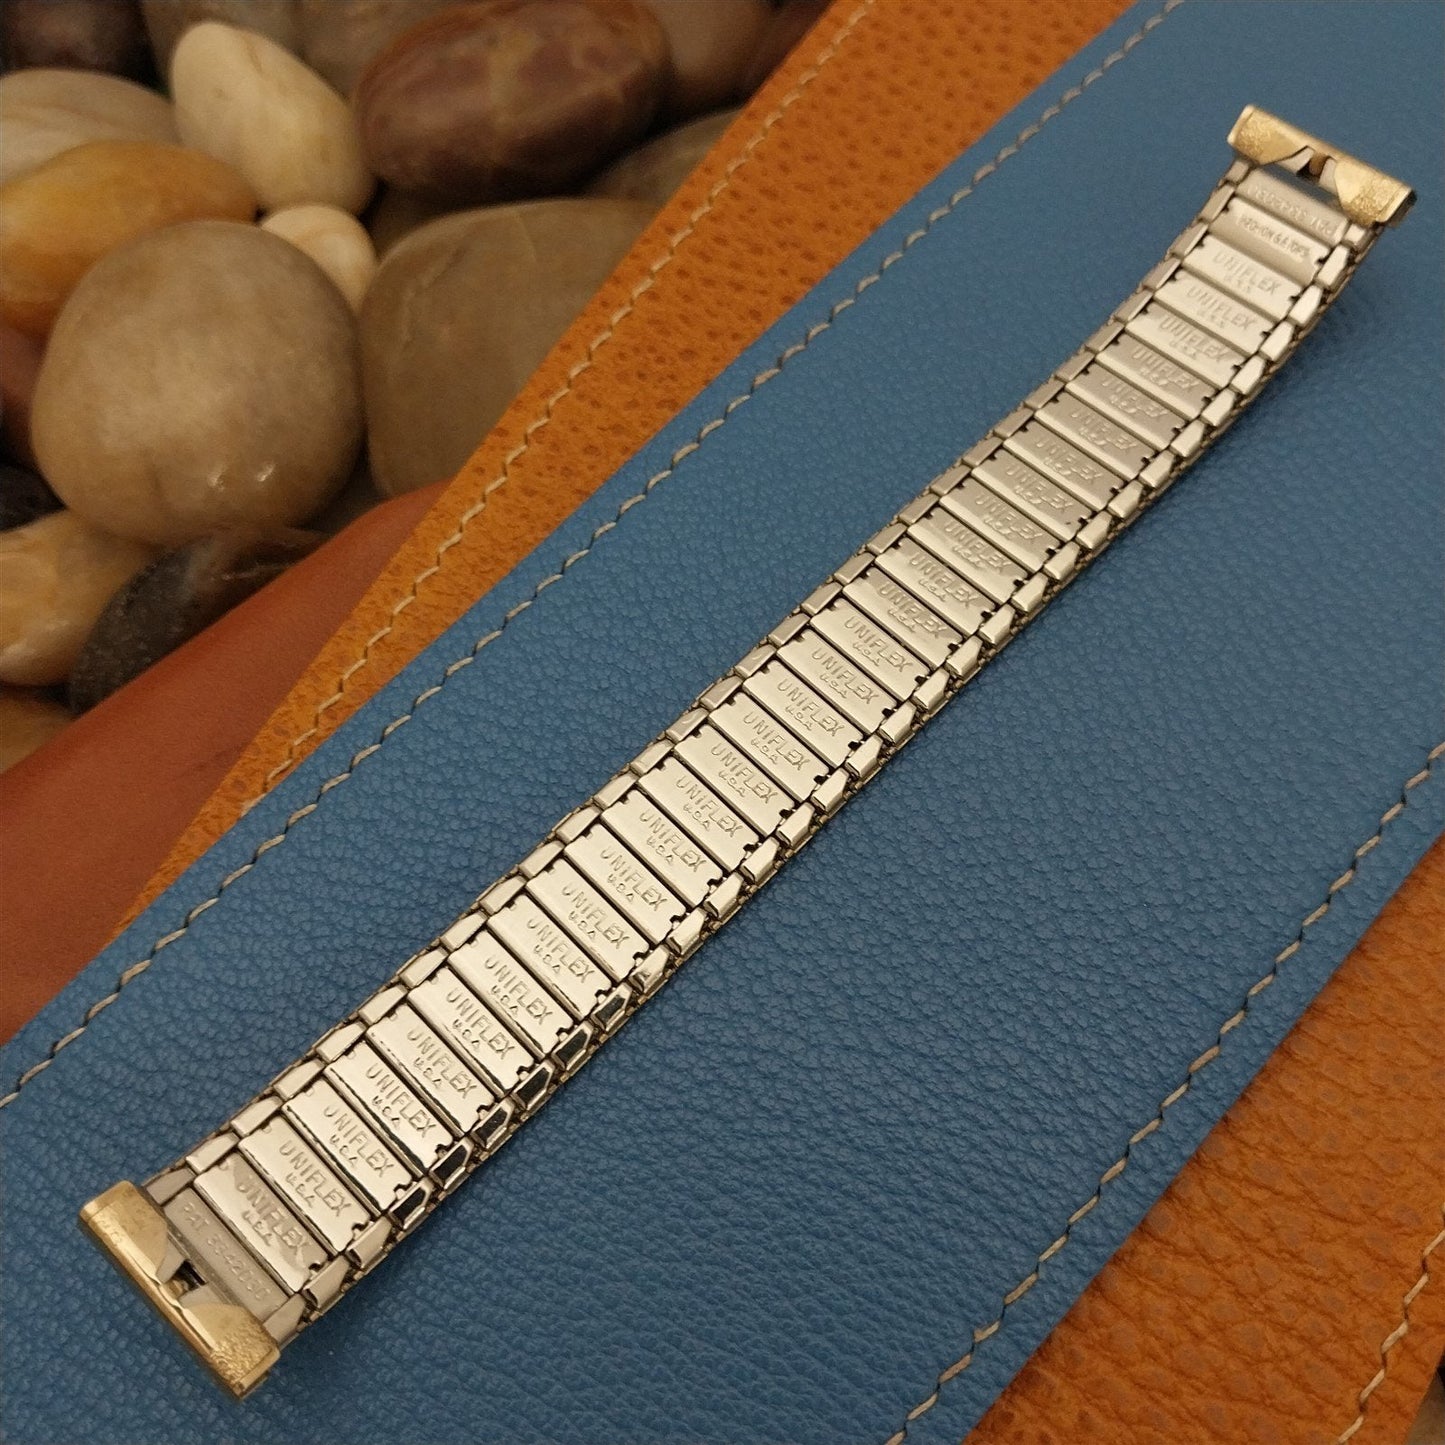 17.2mm 10k Gold-Filled Uniflex Slim Expansion Unused 1960s Vintage Watch Band